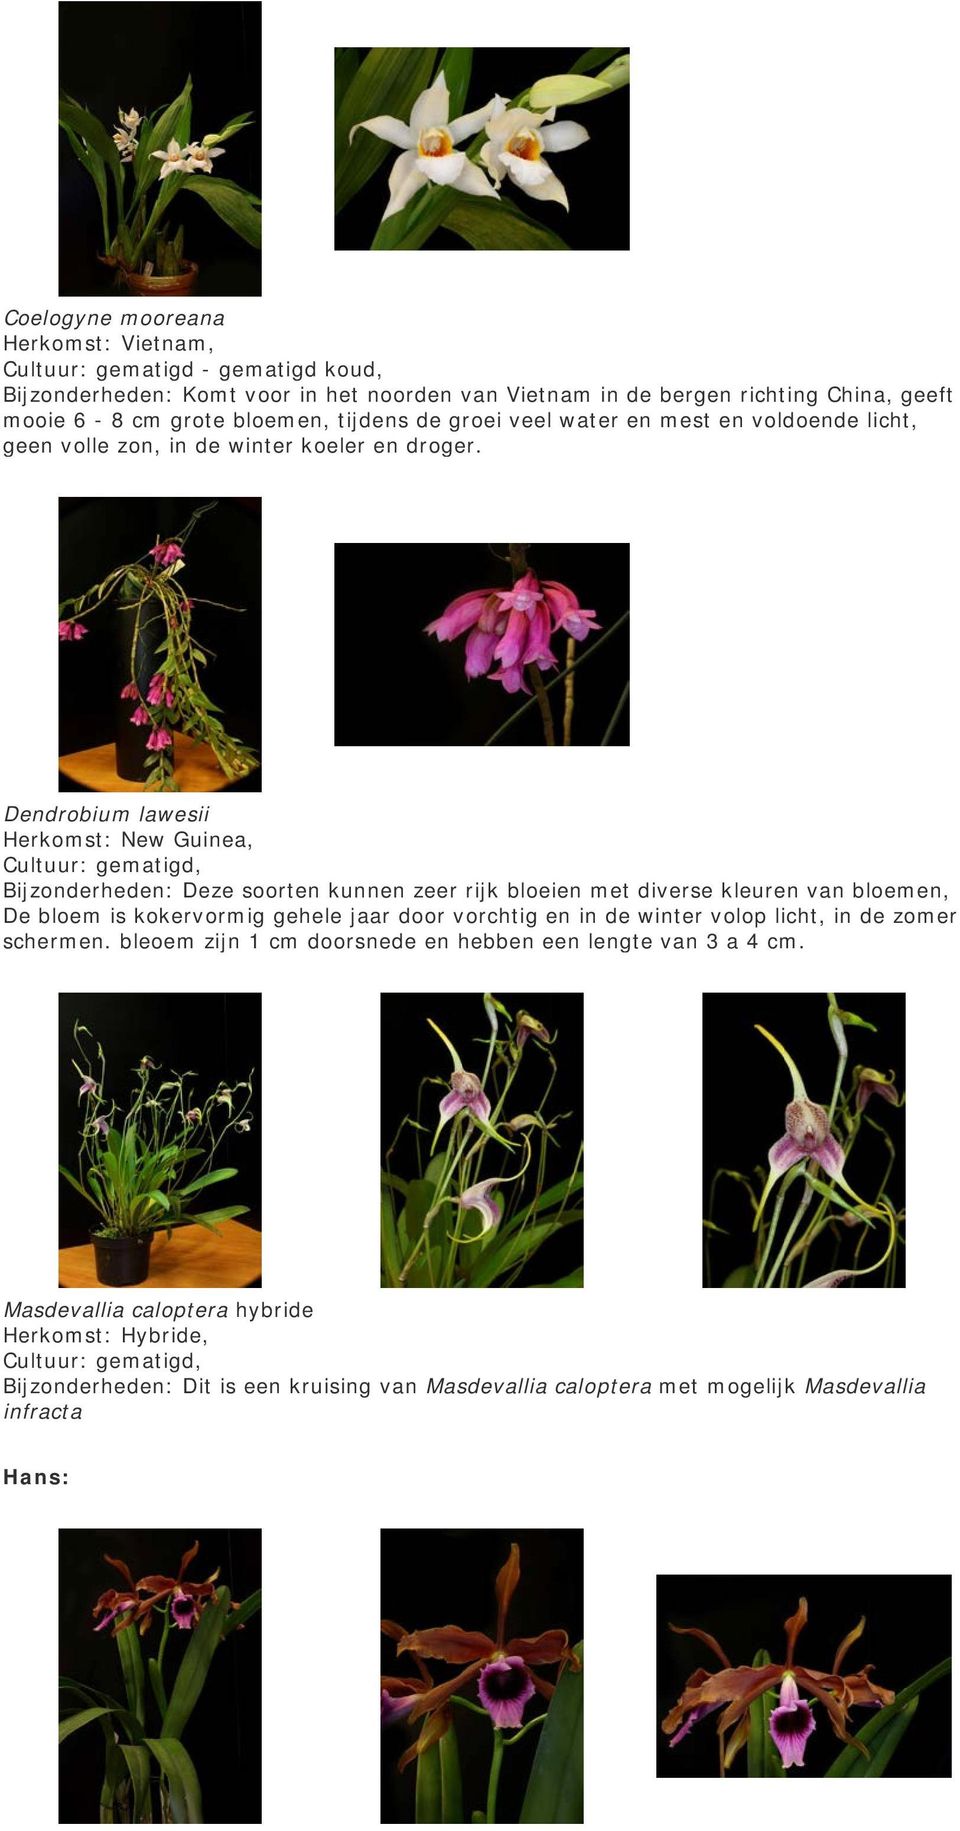 Dendrobium lawesii Herkomst: New Guinea, Bijzonderheden: Deze soorten kunnen zeer rijk bloeien met diverse kleuren van bloemen, De bloem is kokervormig gehele jaar door vorchtig en in